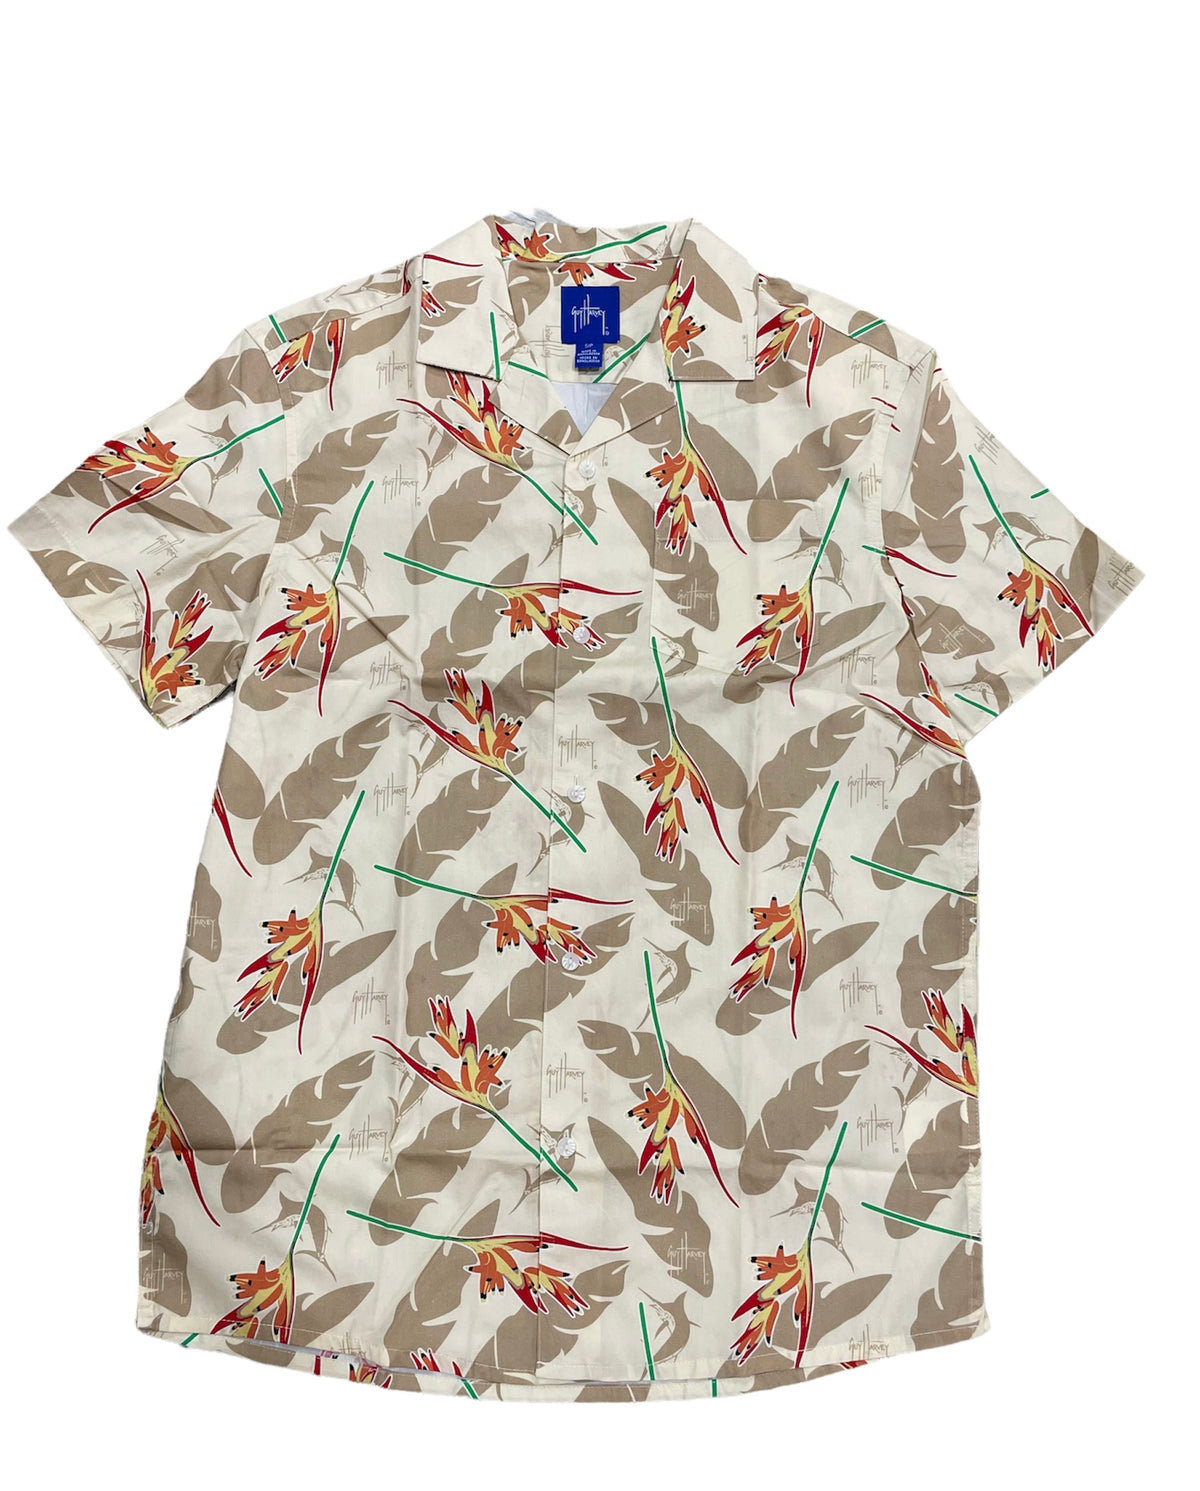 Men's Short Sleeve Fishing Shirt